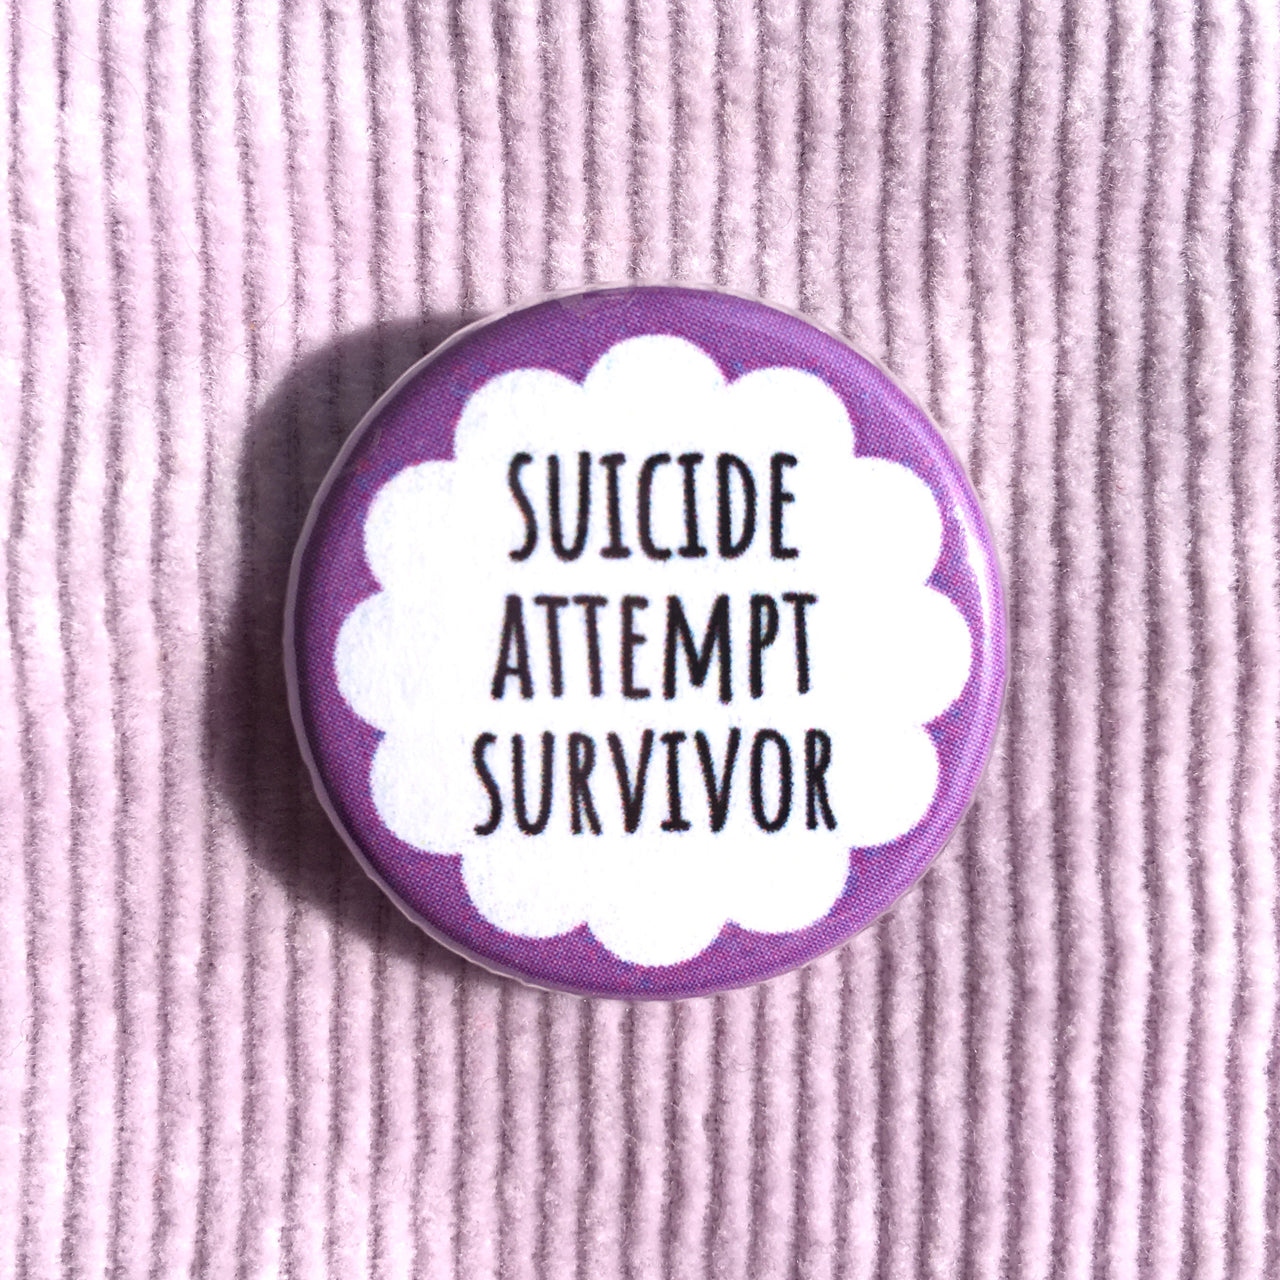 Suicide attempt survivor - Radical Buttons